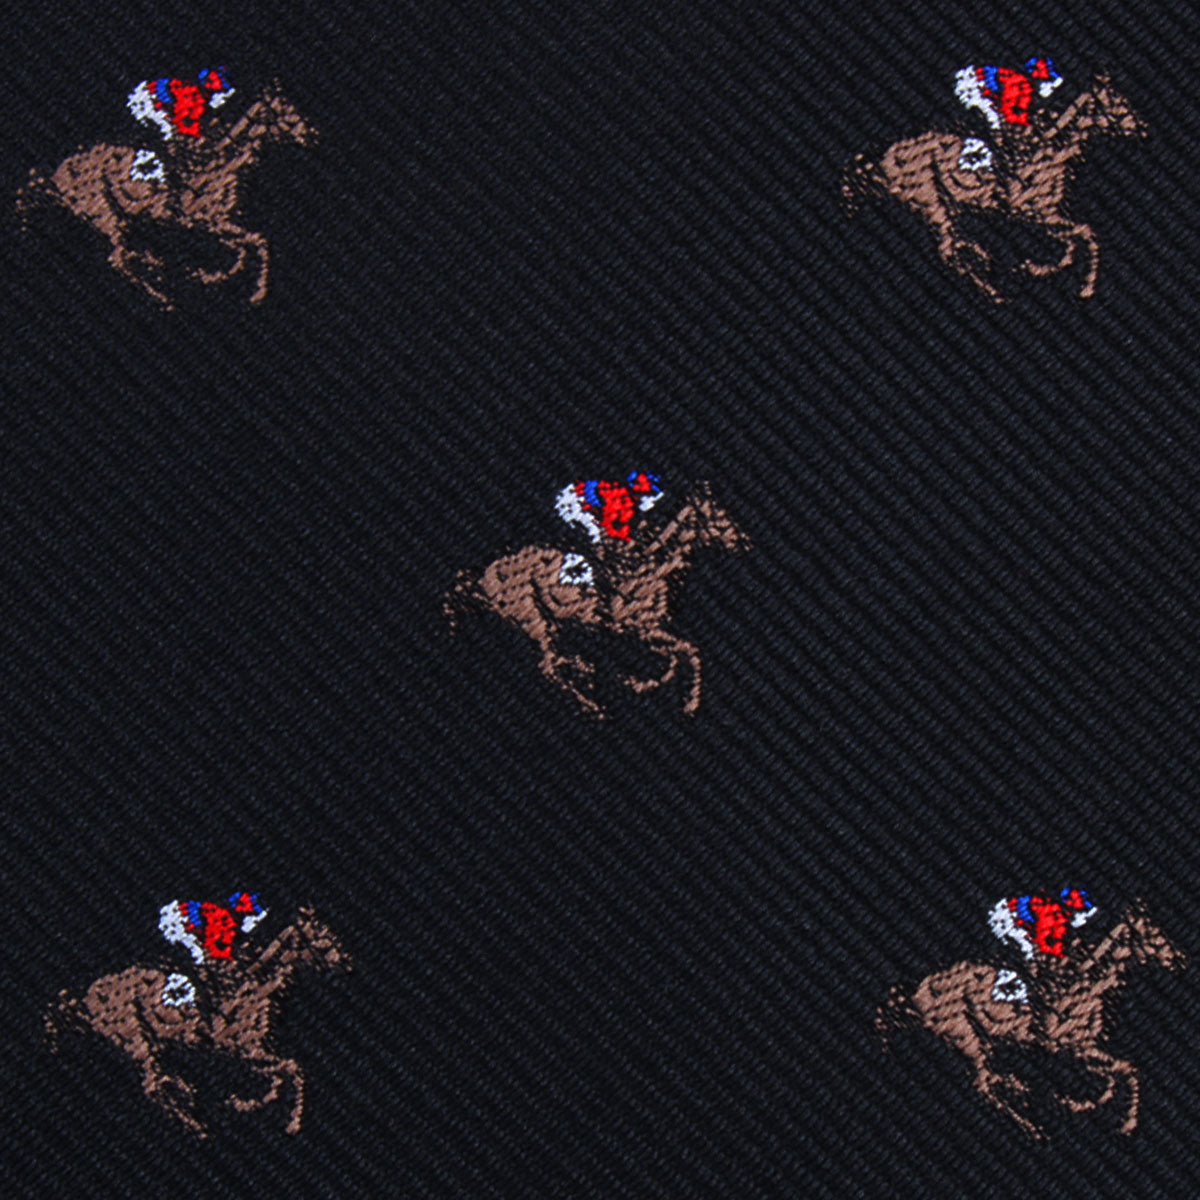 Black Melbourne Race Horse Necktie Fabric